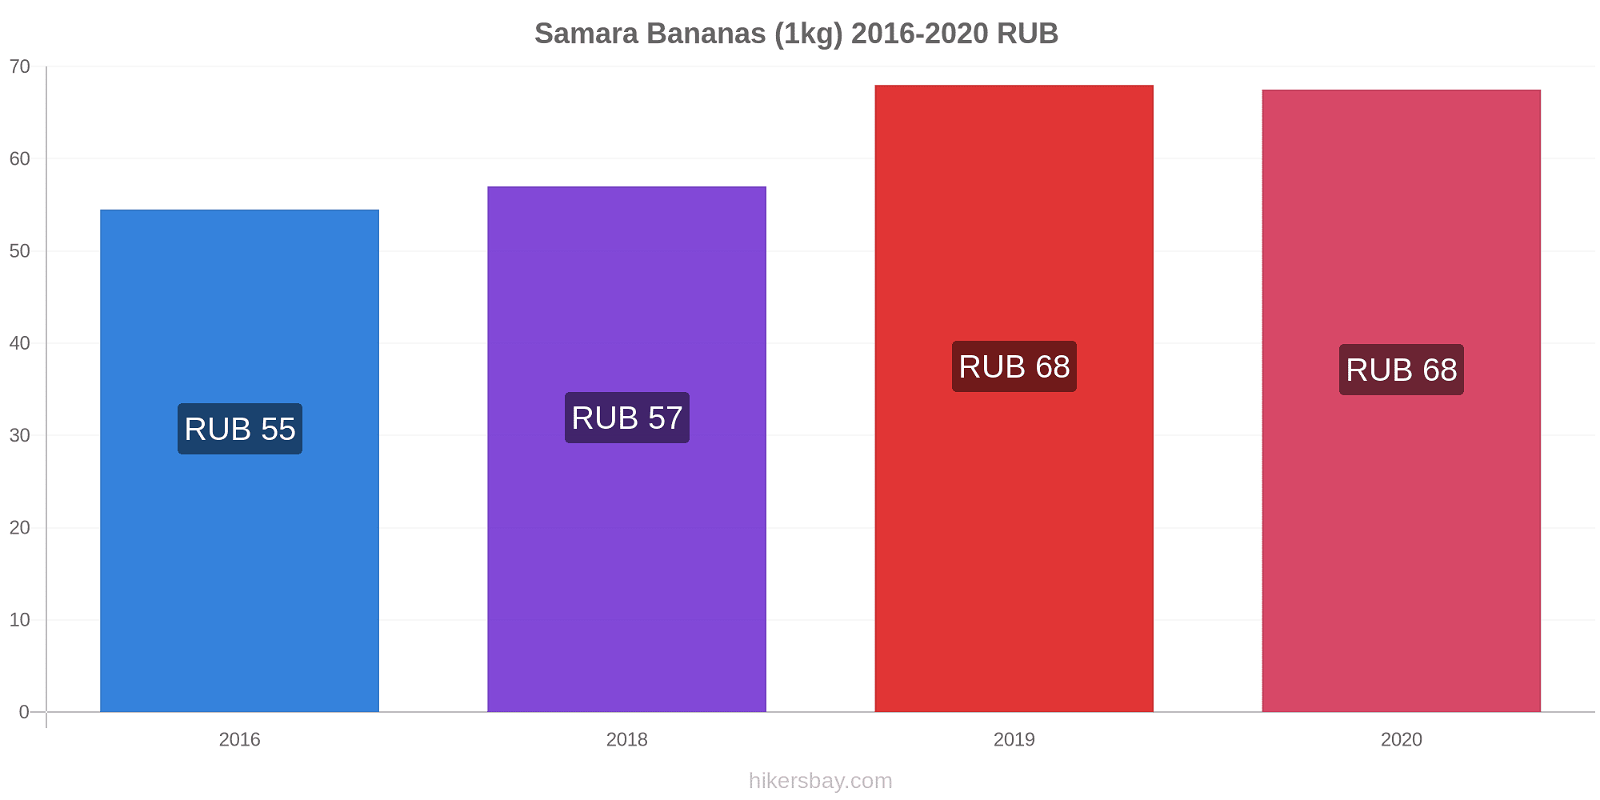 Samara variação de preço Banana (1kg) hikersbay.com